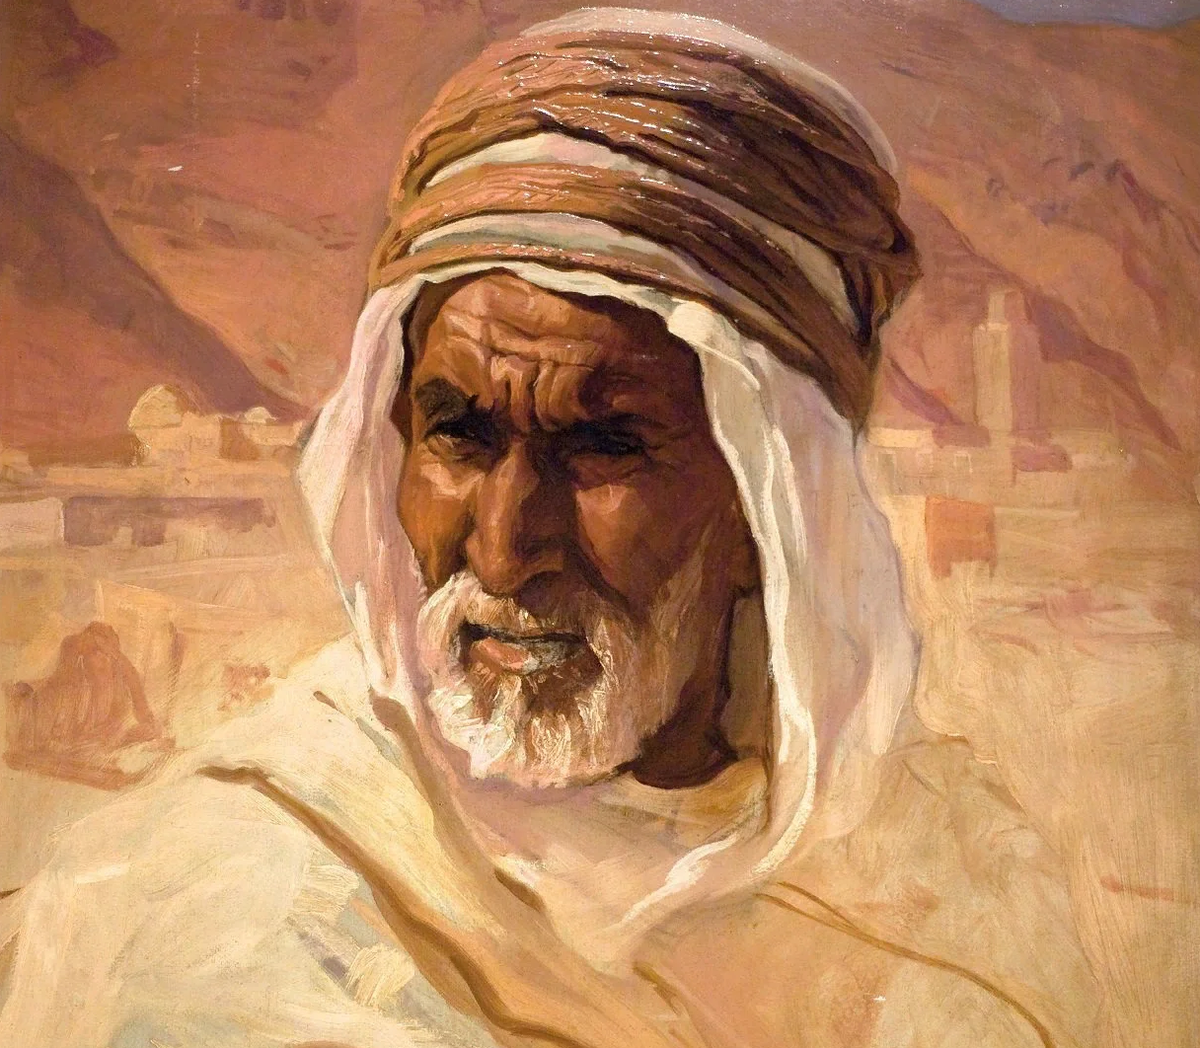 "Люди, от которых нужно держаться подальше": 3 мудрых арабских притчи жизнь,мудрость,притчи